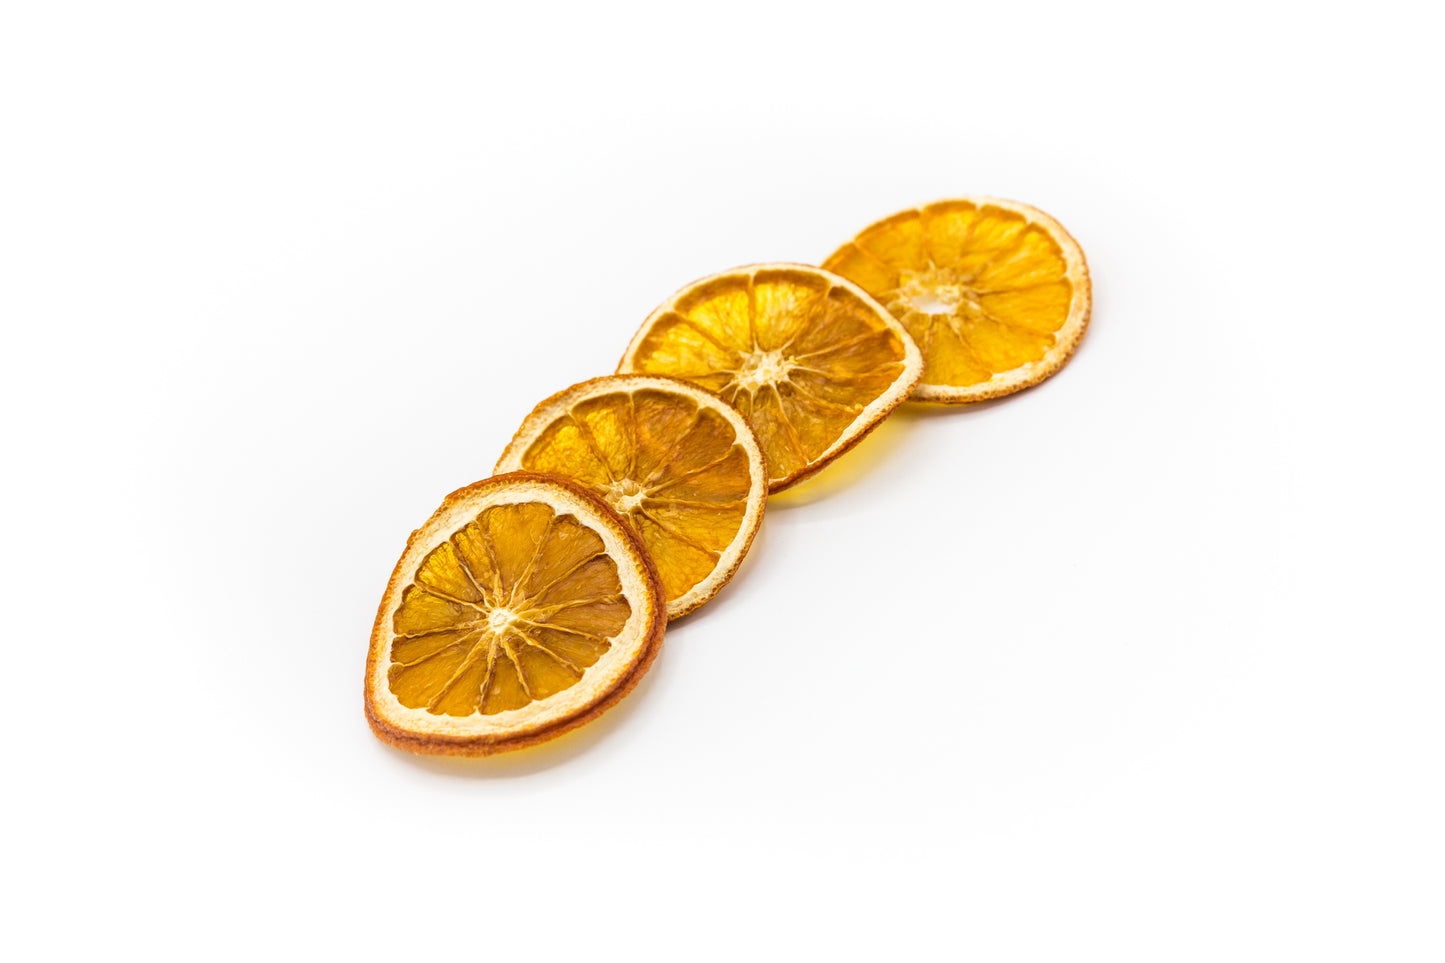 Vier aufgeschnittene, gedörrte Orangen auf weißem Hintergrund.